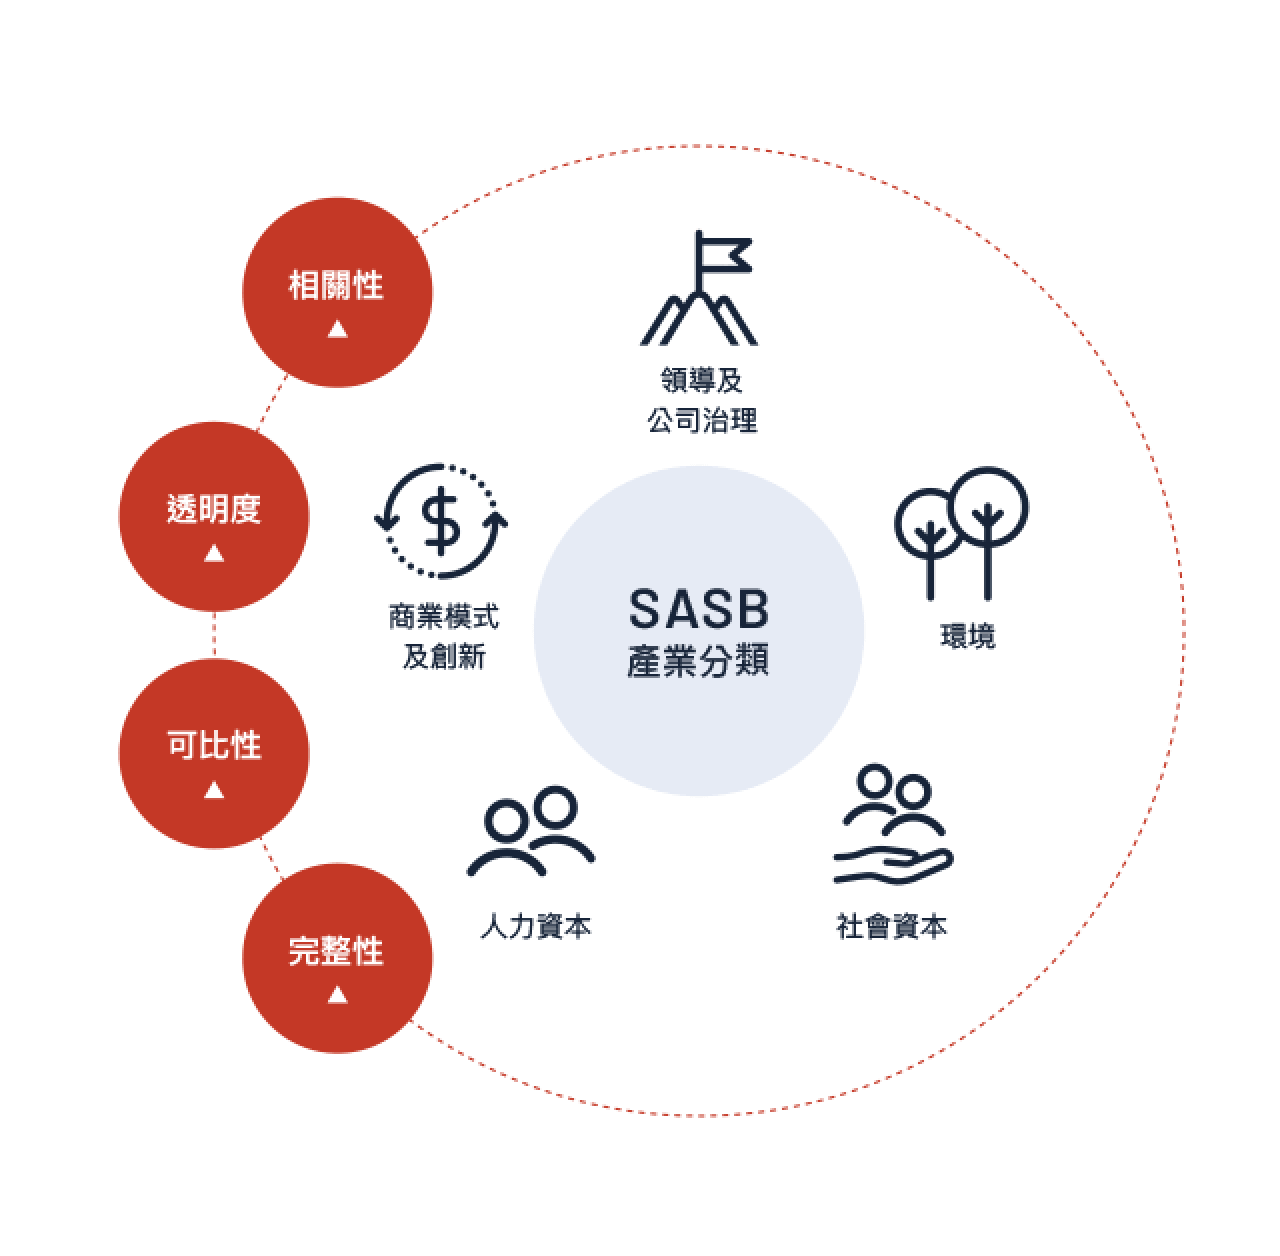 以 SASB 五大永續面向為框架設計